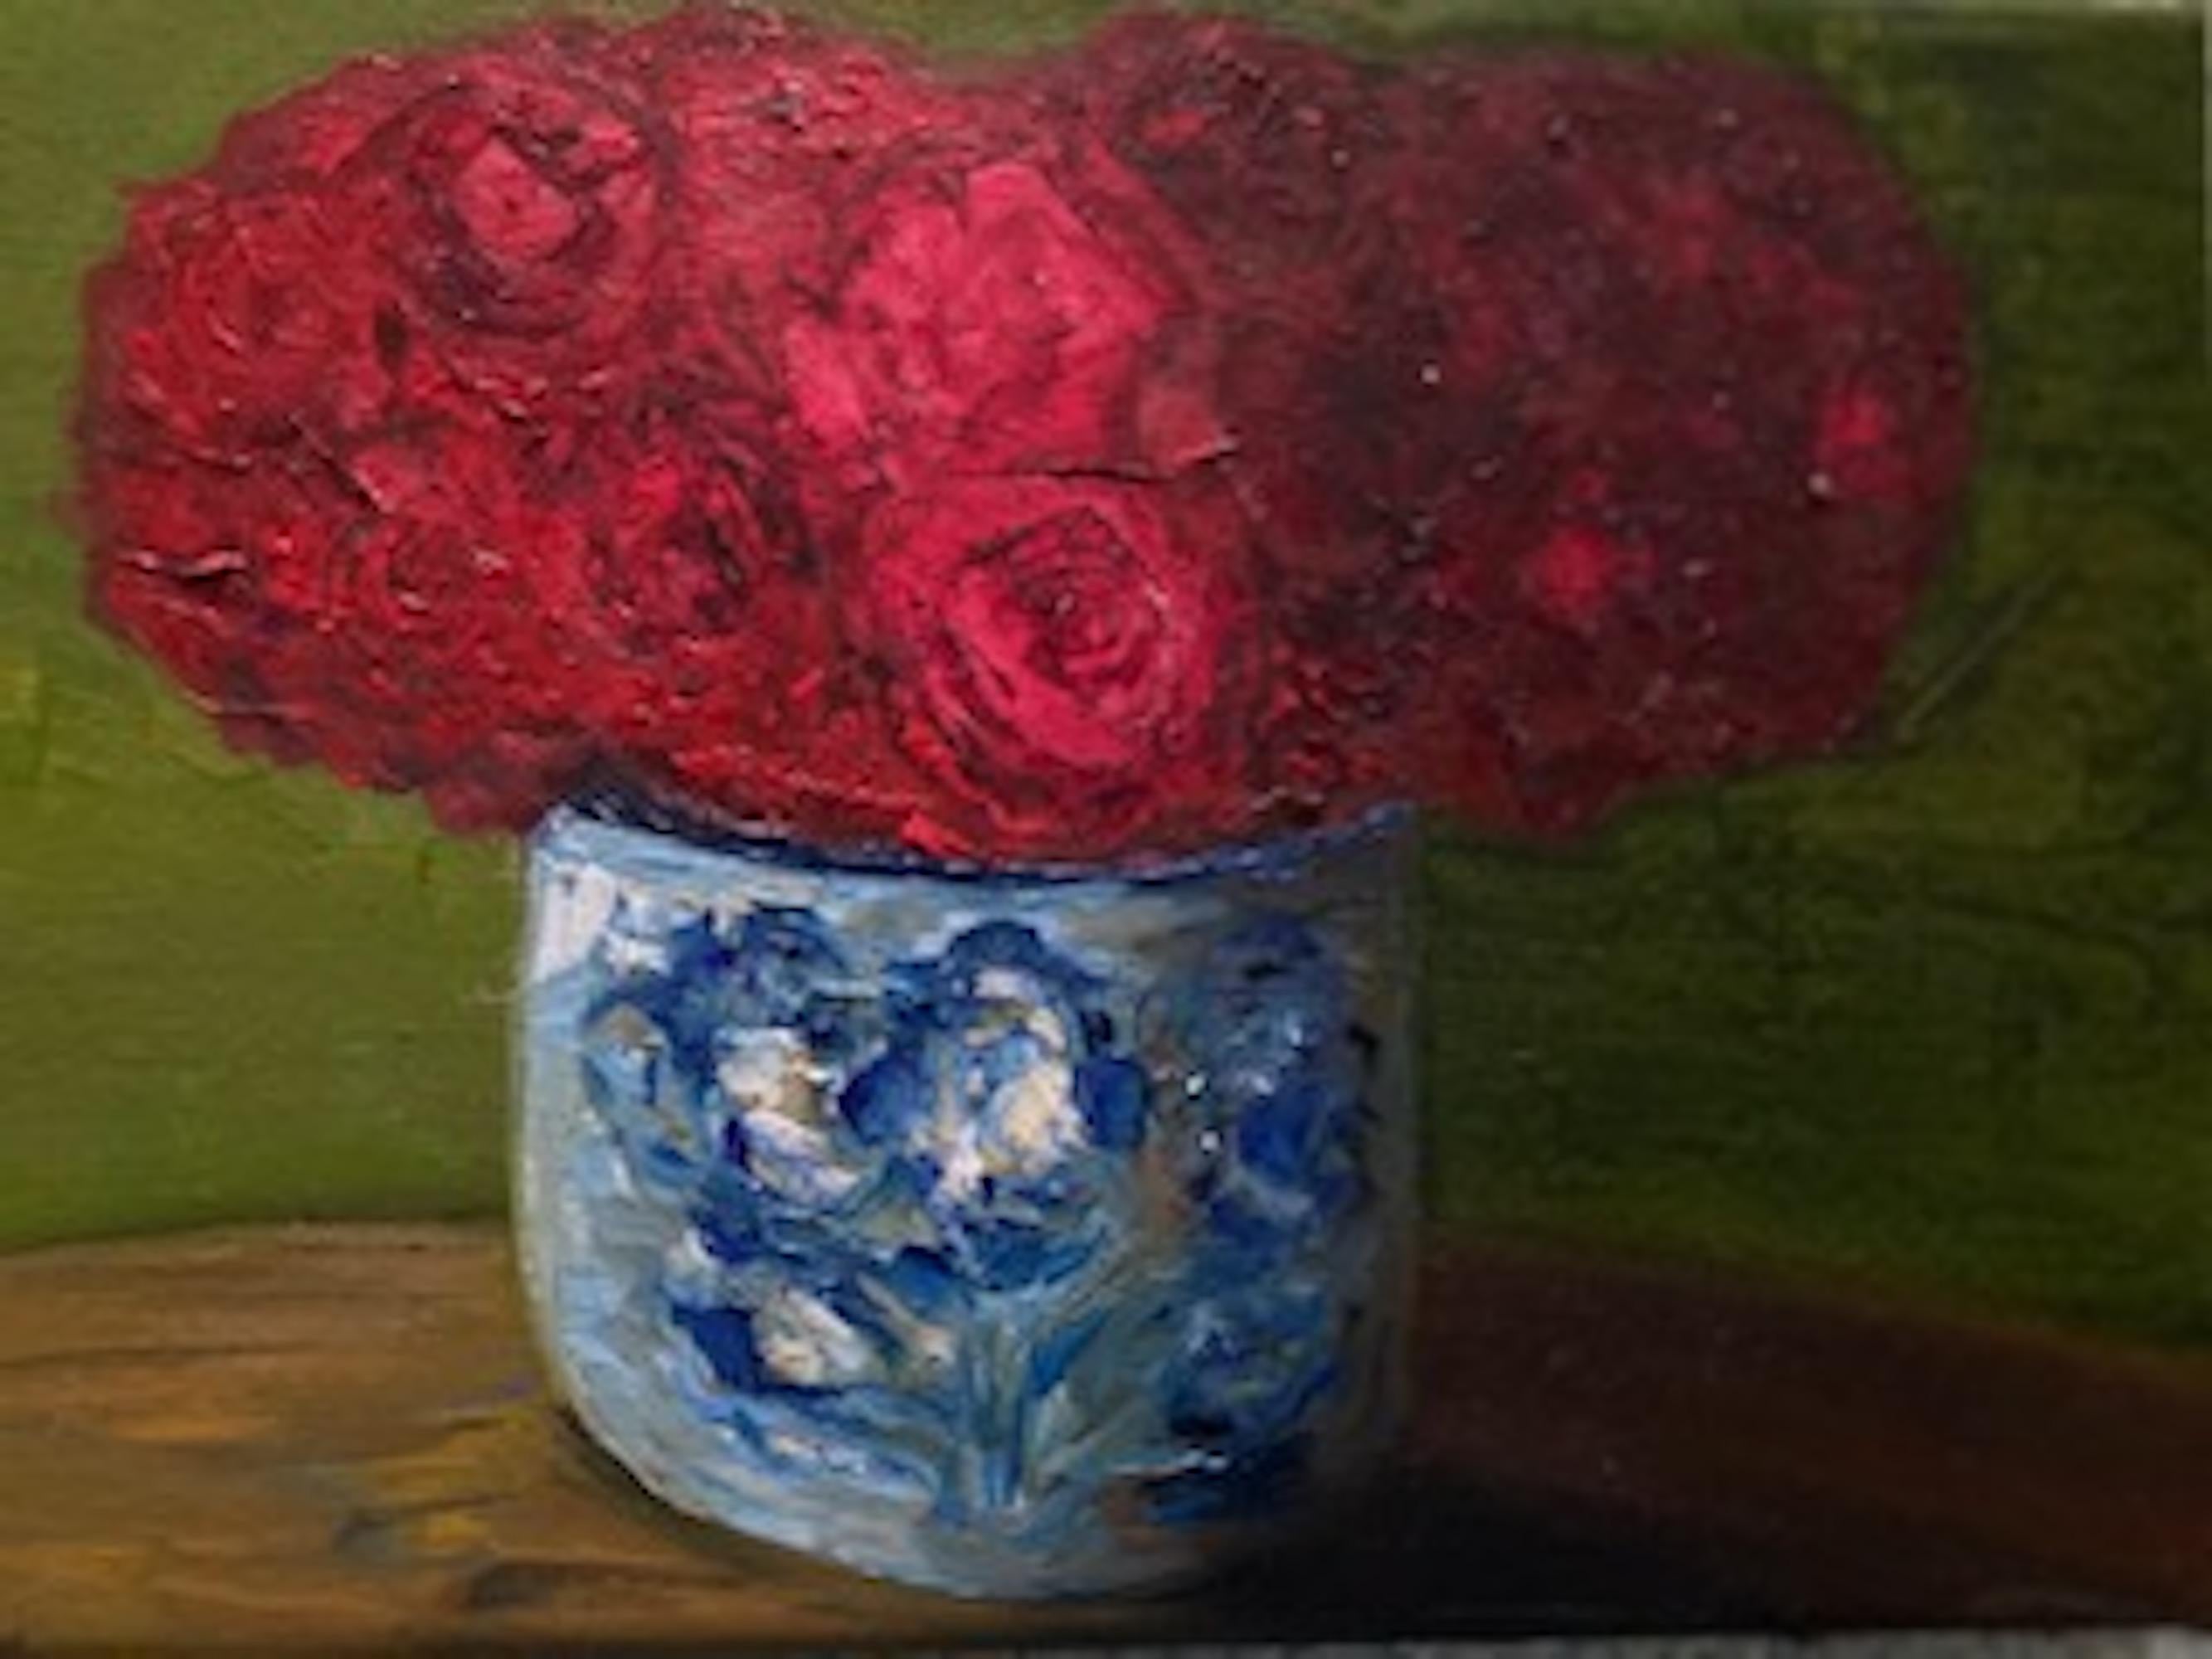 Roses rouges dans un pot de Delft, peinture de nature morte, art floral de style traditionnel